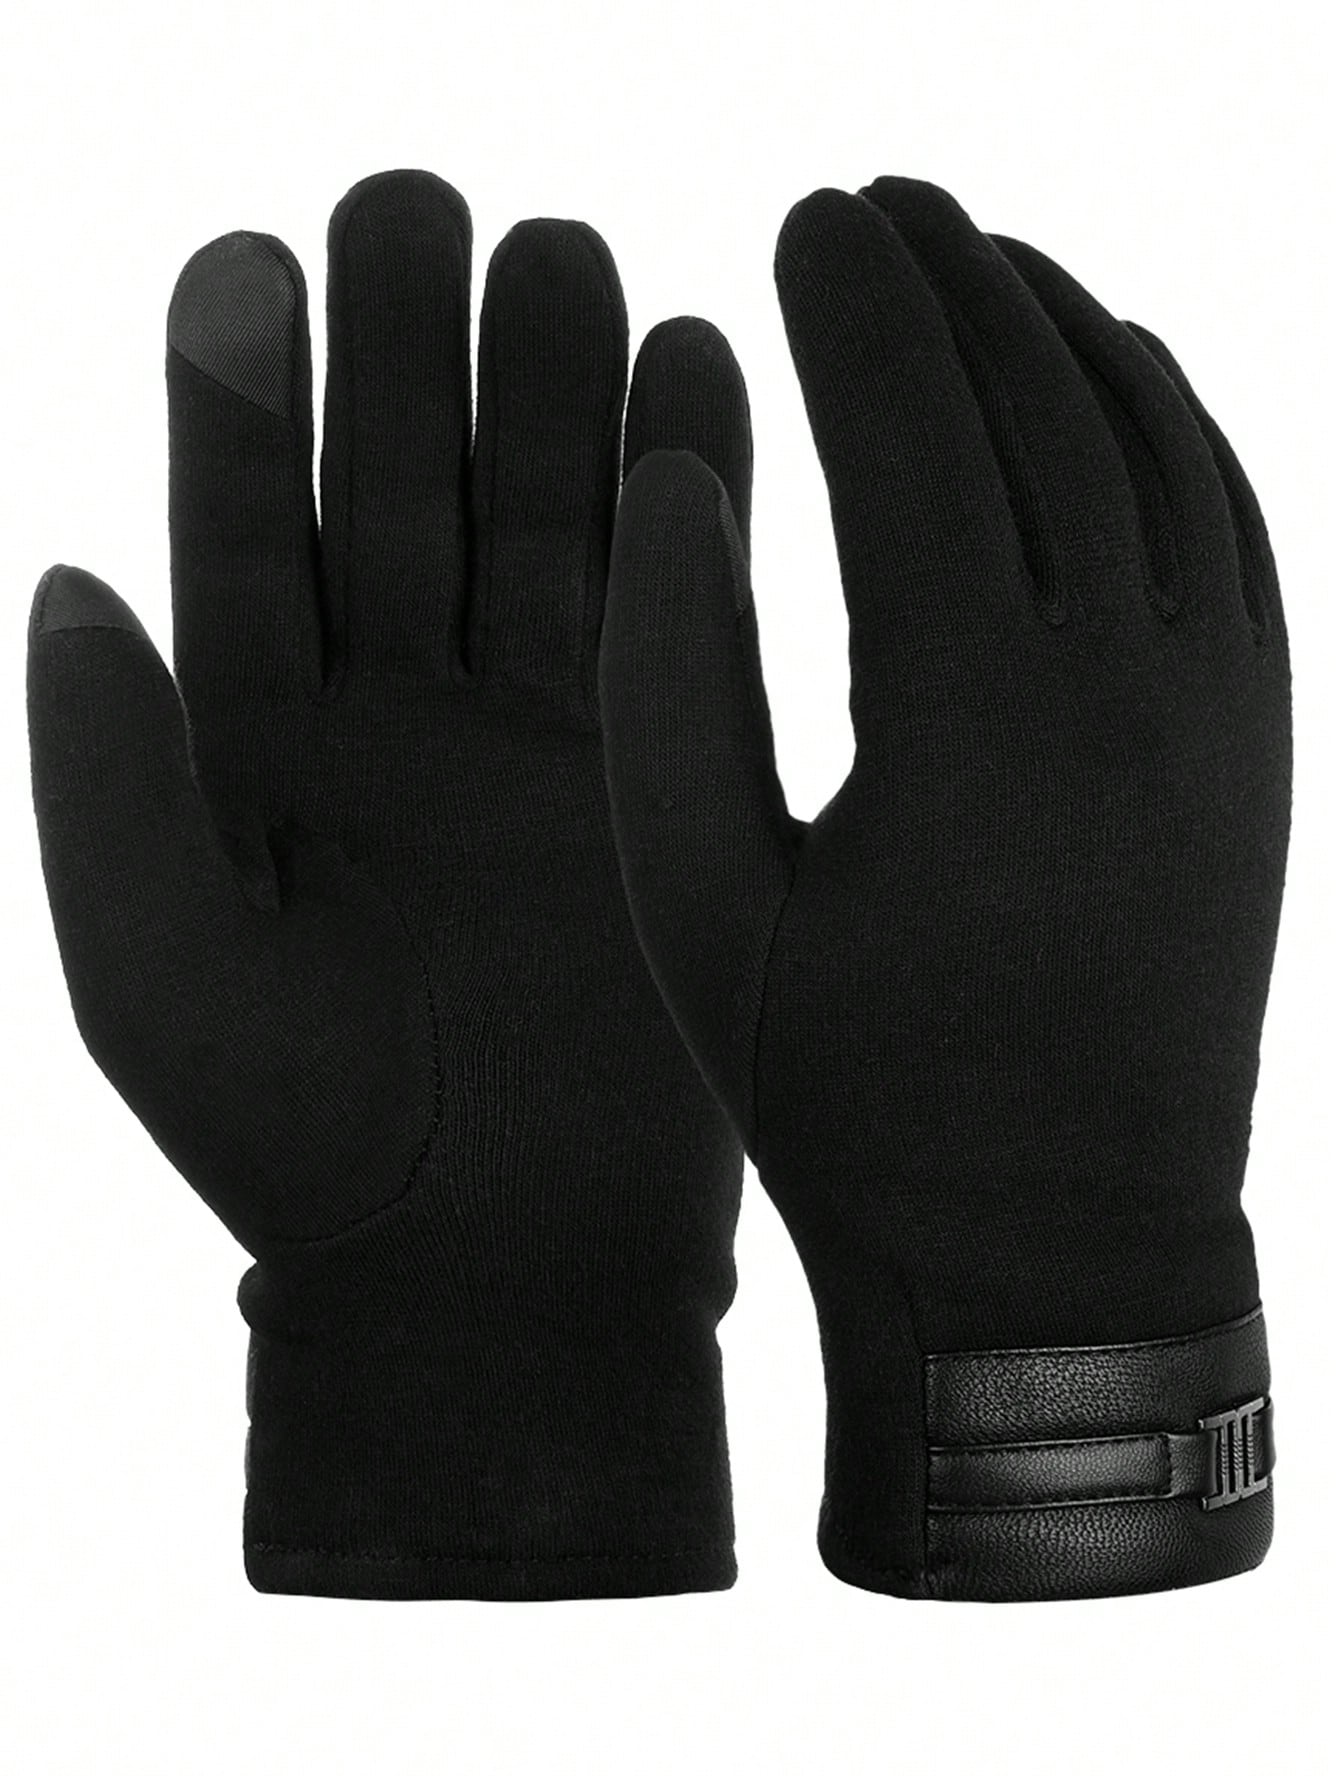 ATARNI Зимние теплые перчатки Перчатки для сенсорного экрана Повседневные перчатки для мужчин, черный русские меховые перчатки зимние теплые мужские замшевые перчатки из овчины и шерсти китайские производители оптовая продажа под заказ